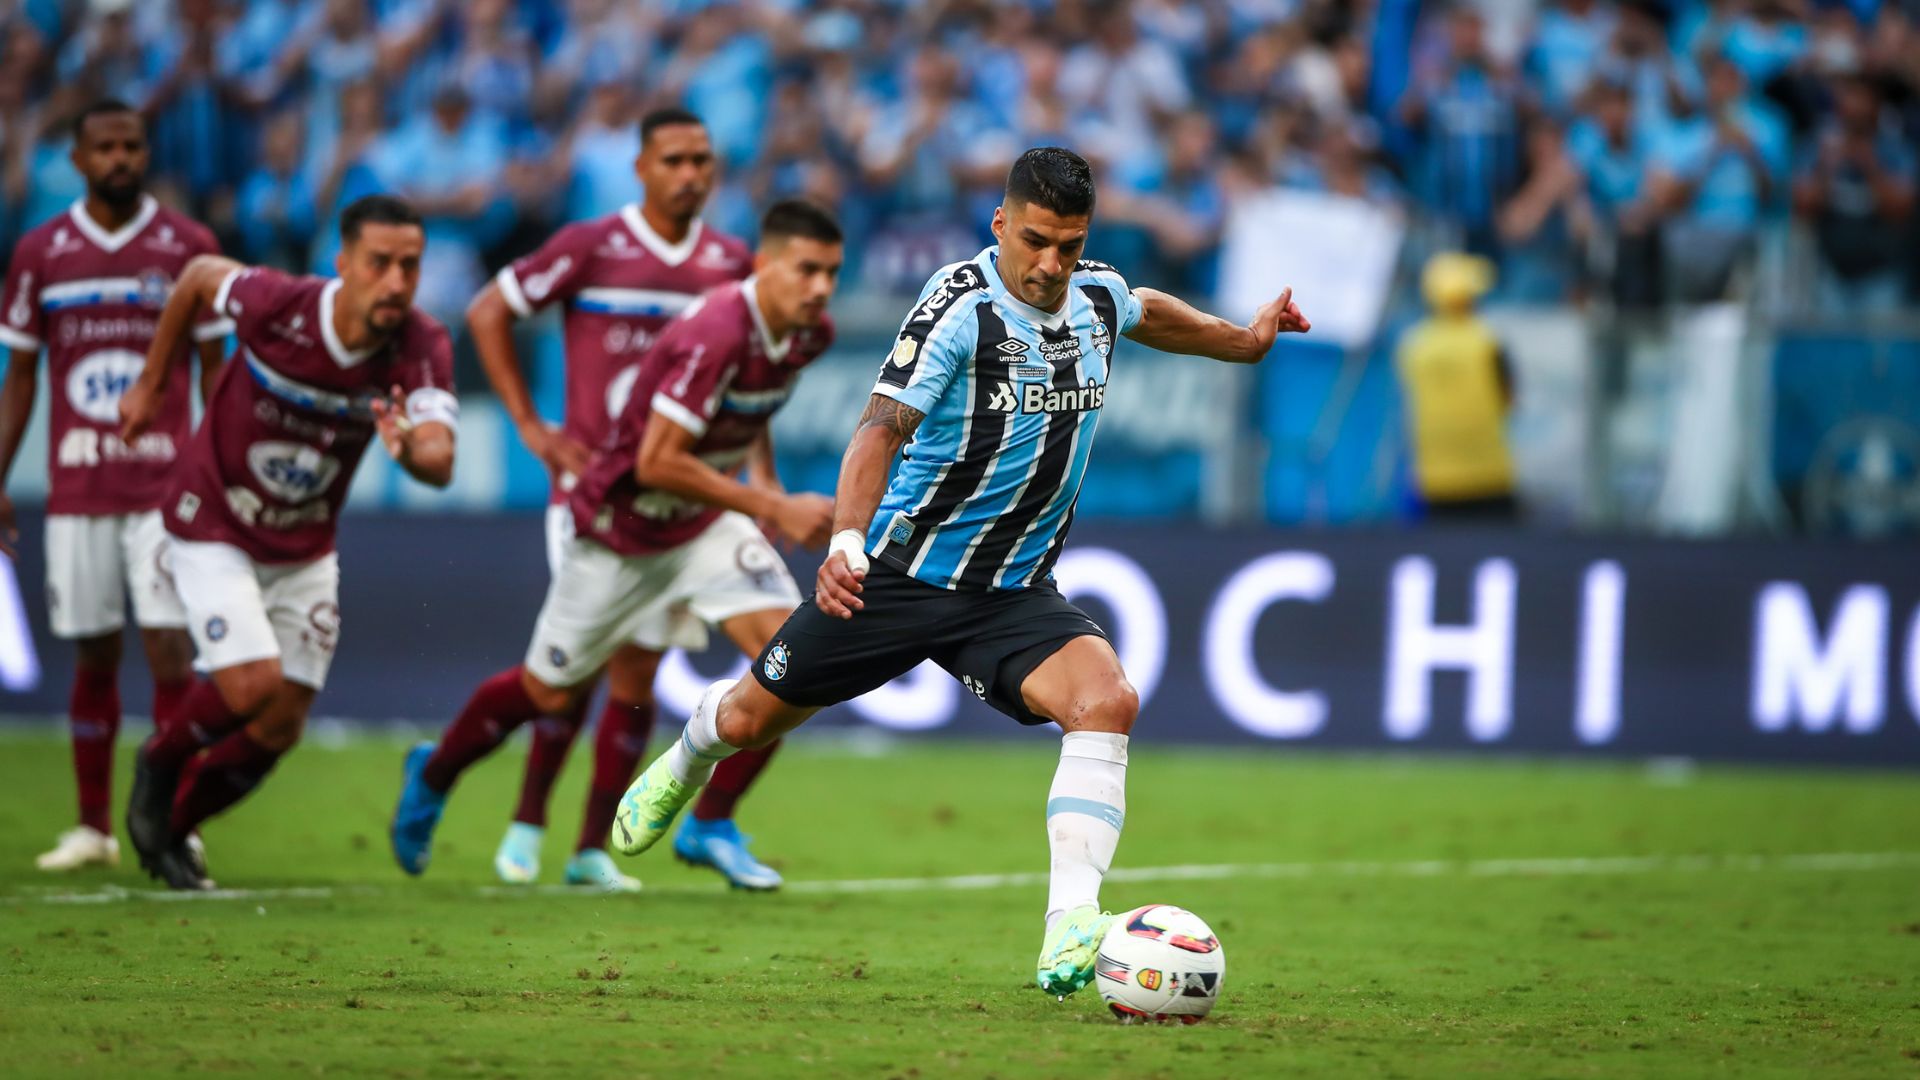 Pênalti para o Grêmio contra o Caxias (Crédito: Getty Images)